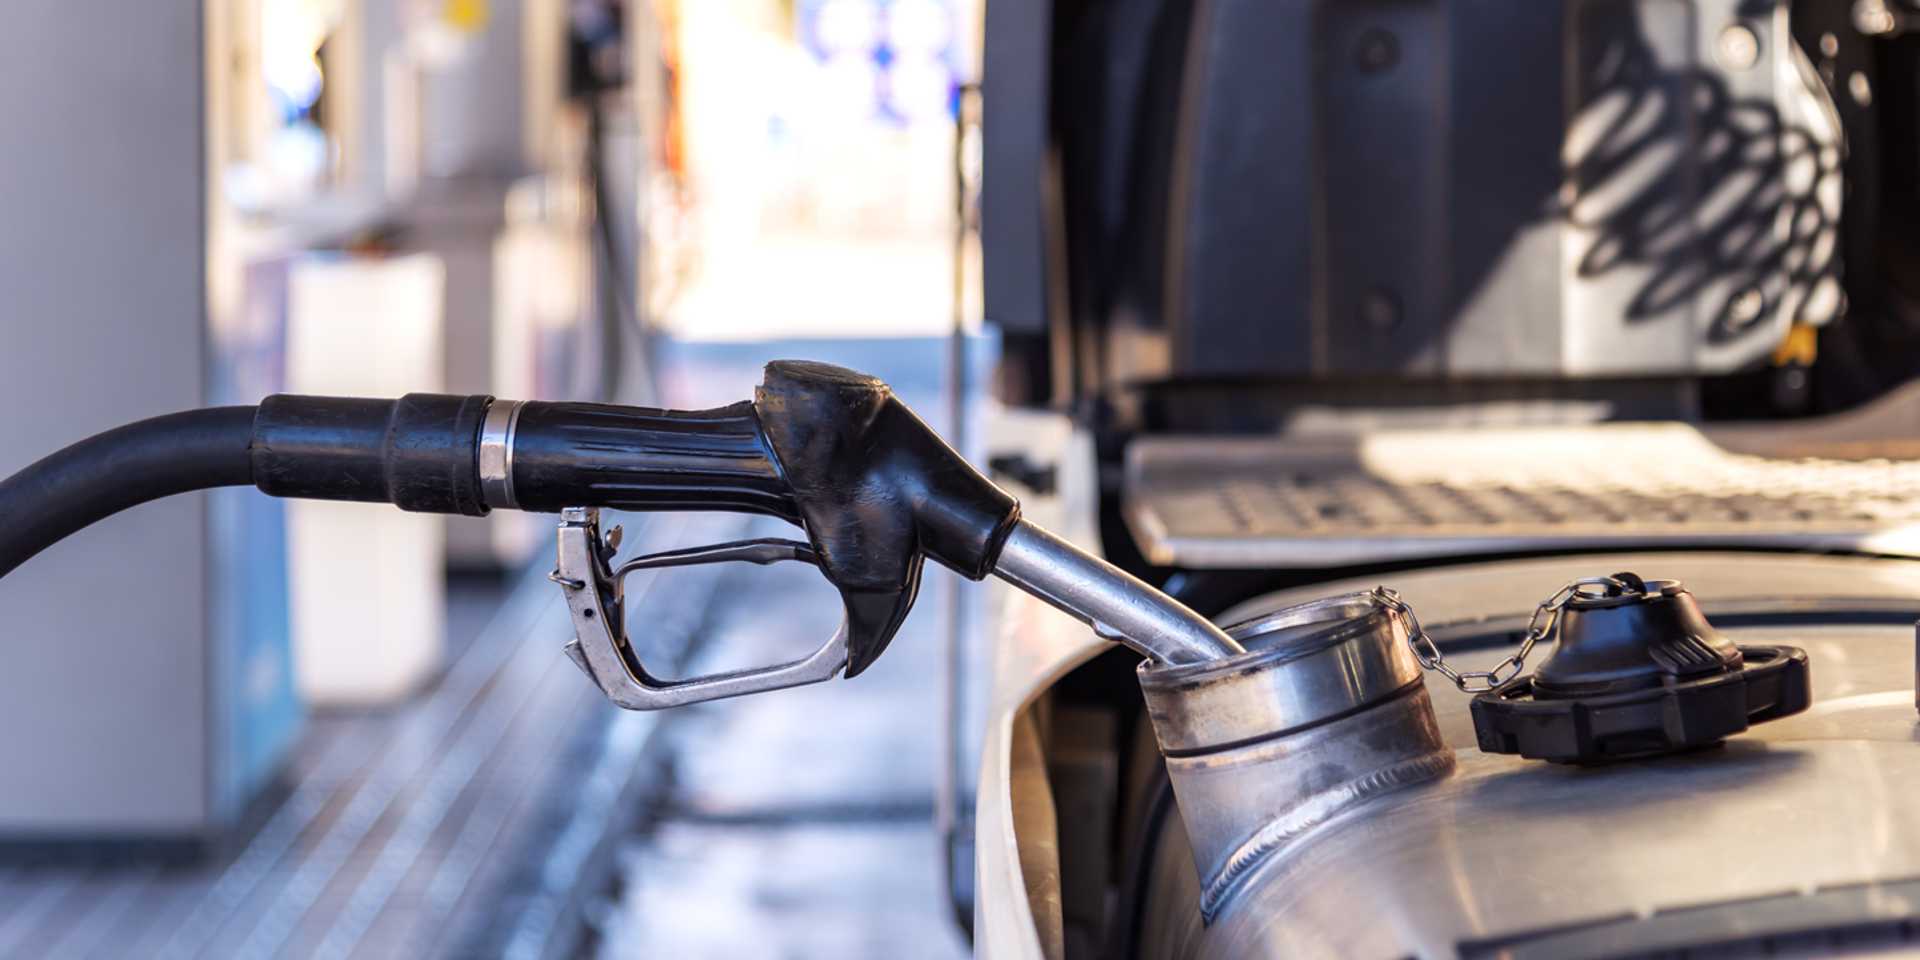 Diebstahlschutz für Dieseltank - Sicherung gegen Dieselklau, Dieseldiebstahl,  Kraftstoffdiebstahl und Treibstoffdiebstahl